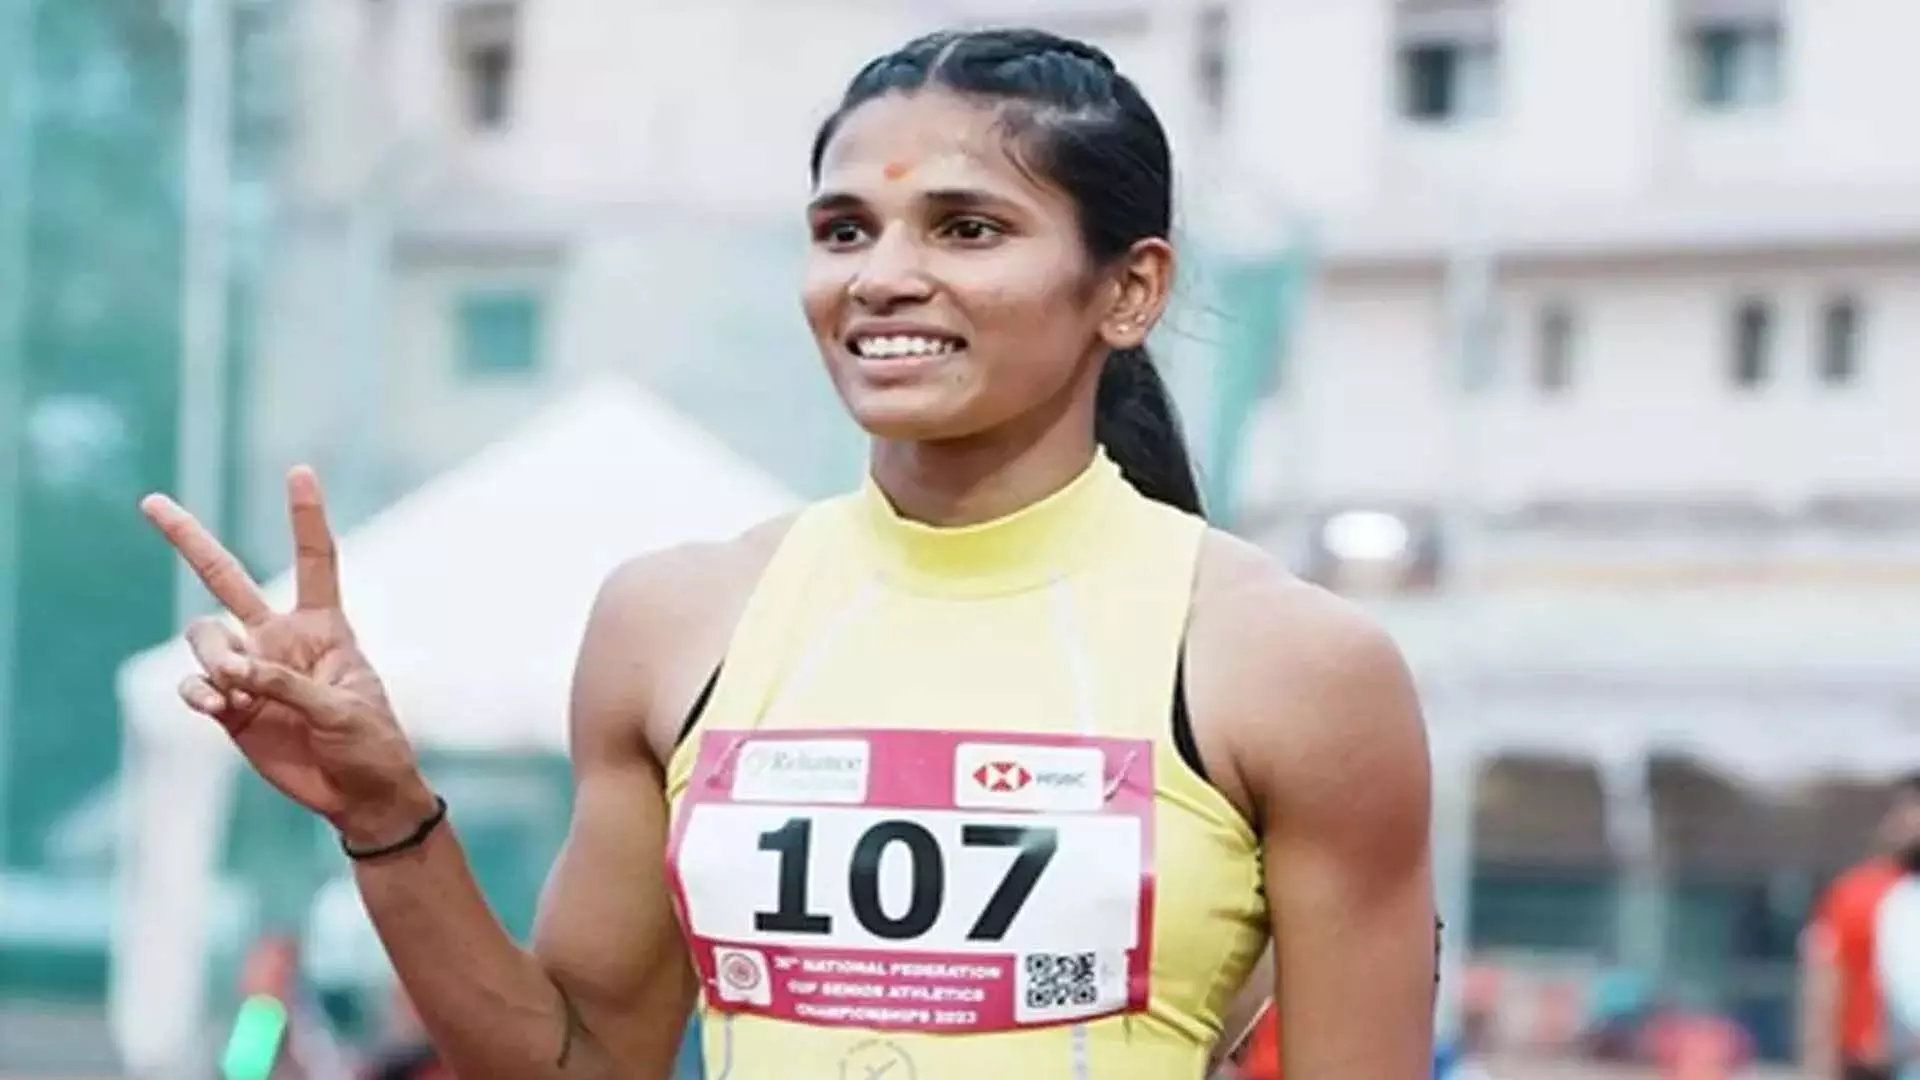 ज्योति ने स्वर्ण पदक के साथ राष्ट्रीय रिकॉर्ड तोड़ा